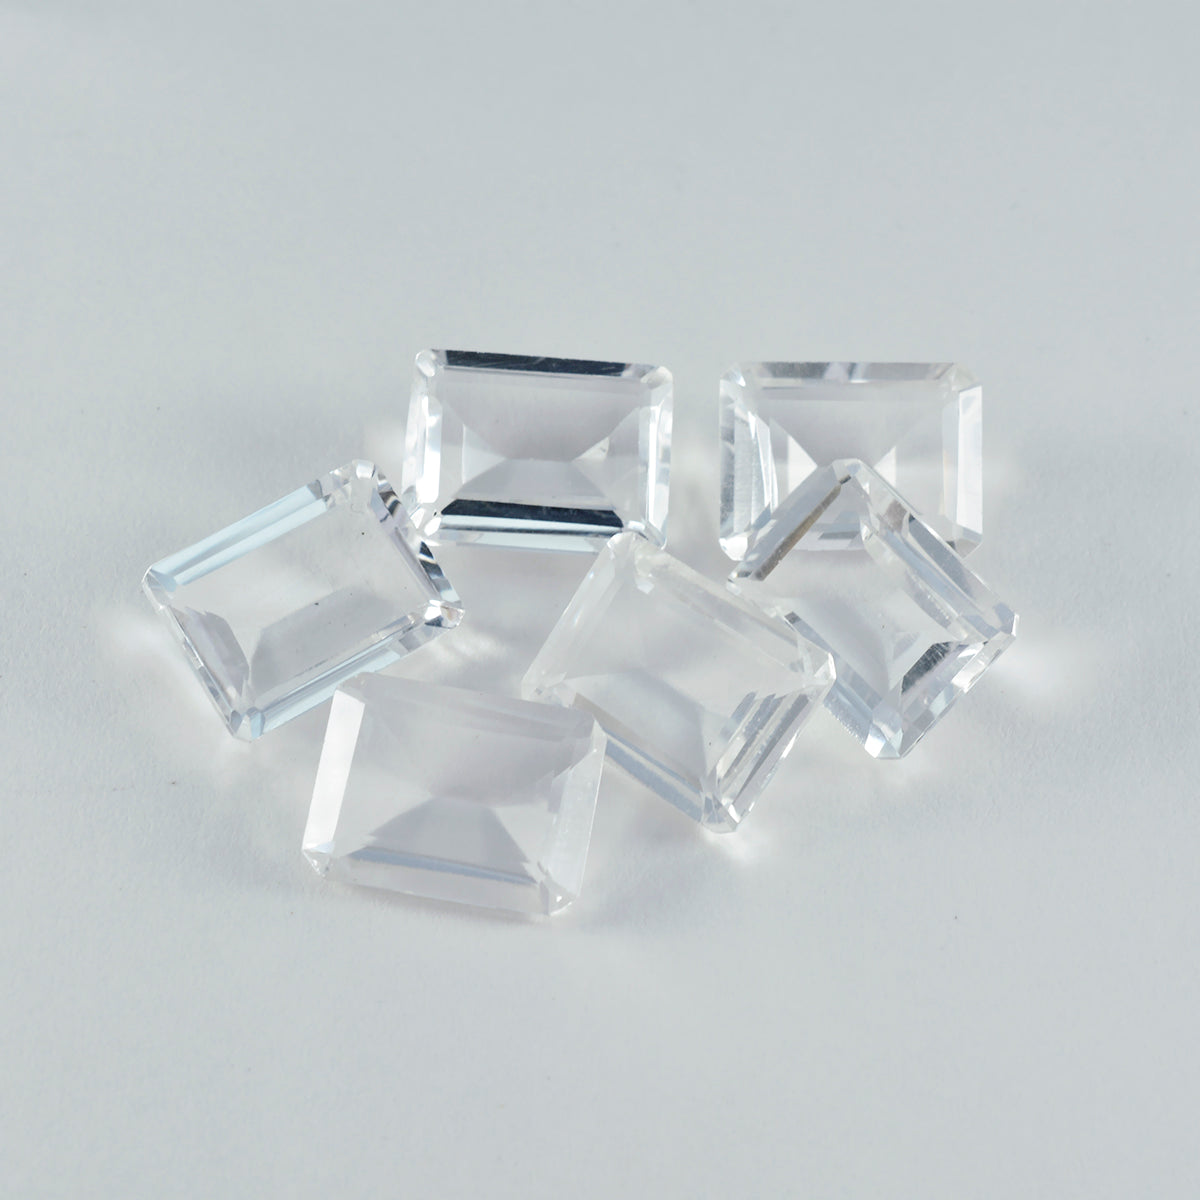 riyogems 1 шт., белый кристалл кварца, граненый 10x14 мм, восьмиугольная форма, красивый качественный драгоценный камень